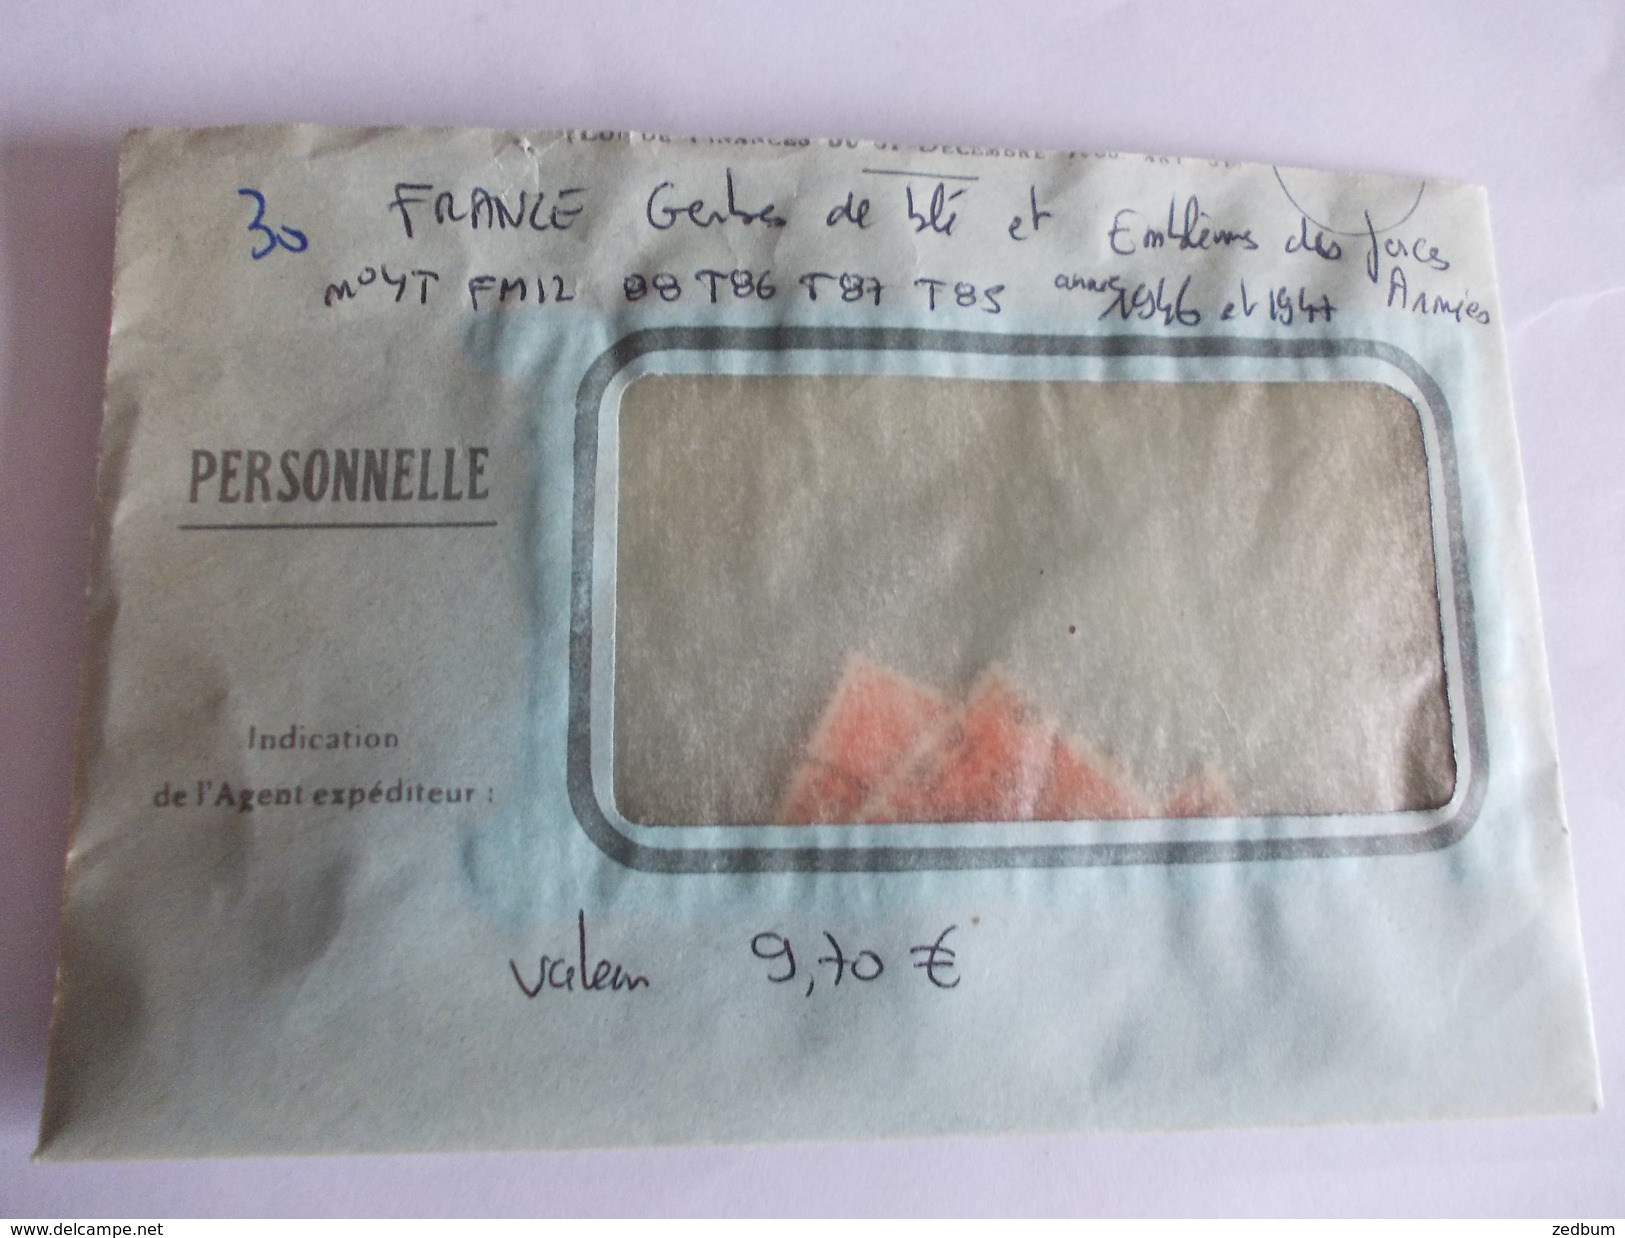 TIMBRE France Gerbes de blé et emblèmes des forces armées valeur mini 9.70 &euro;